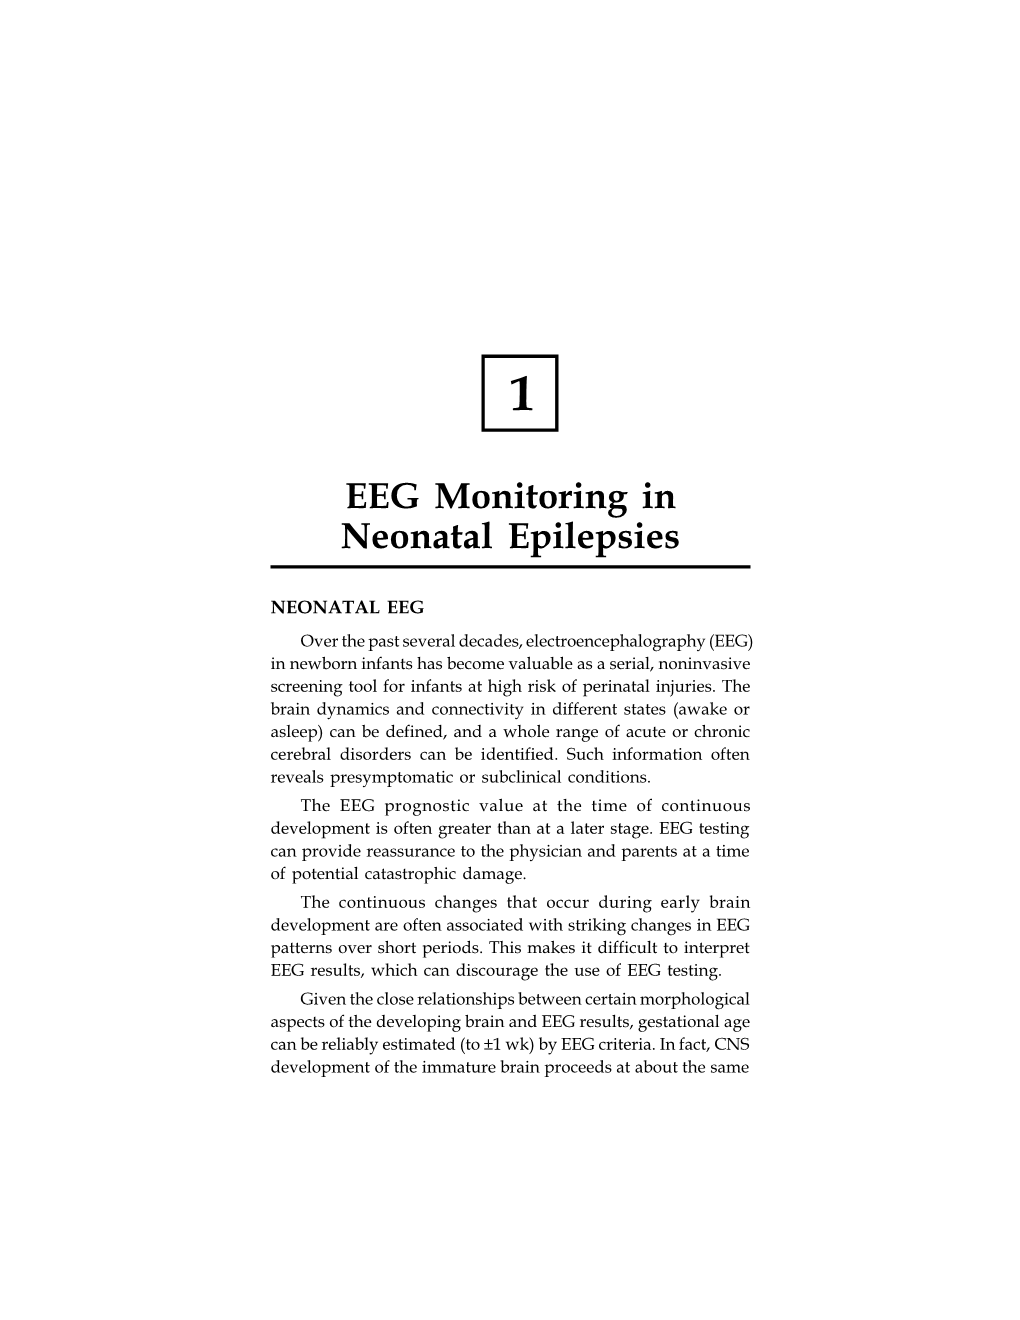 EEG Monitoring in Neonatal Epilepsies 1